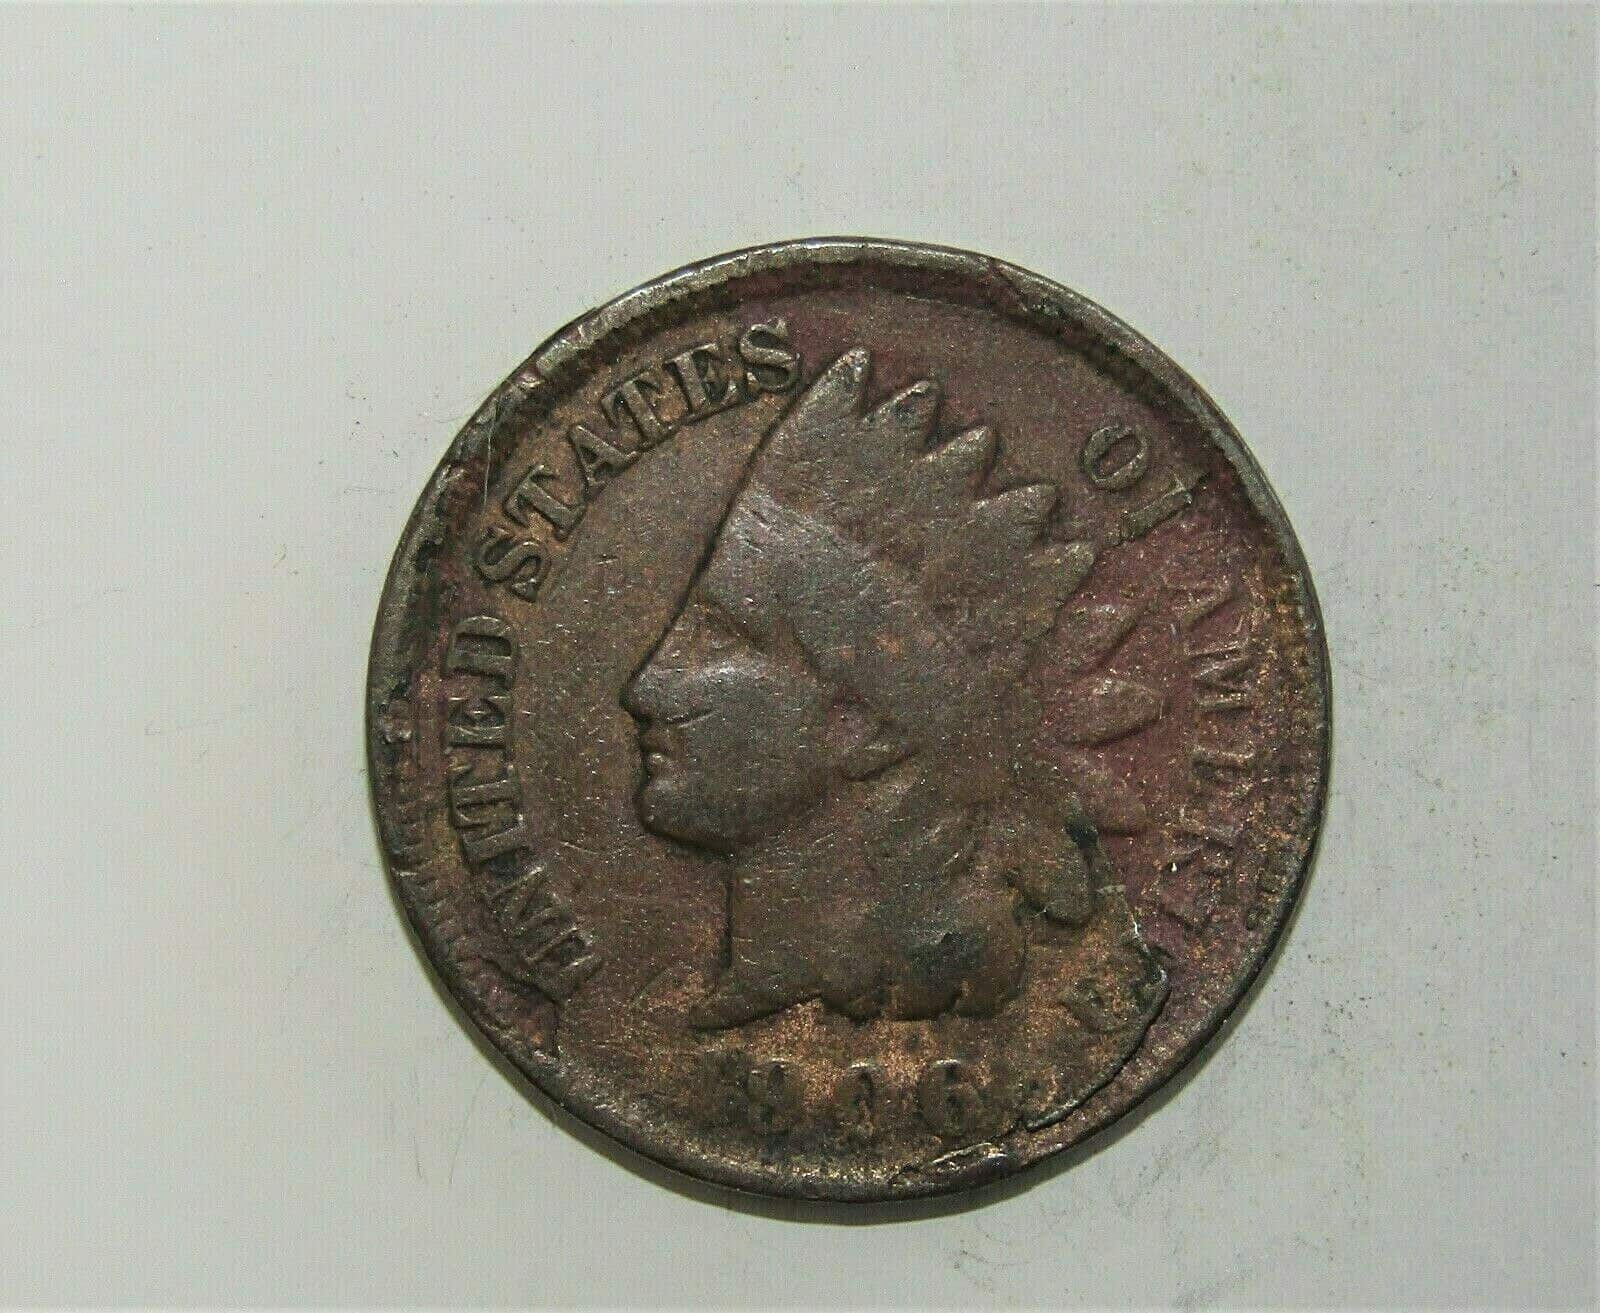 1906 Indian Head Penny Die Breaks